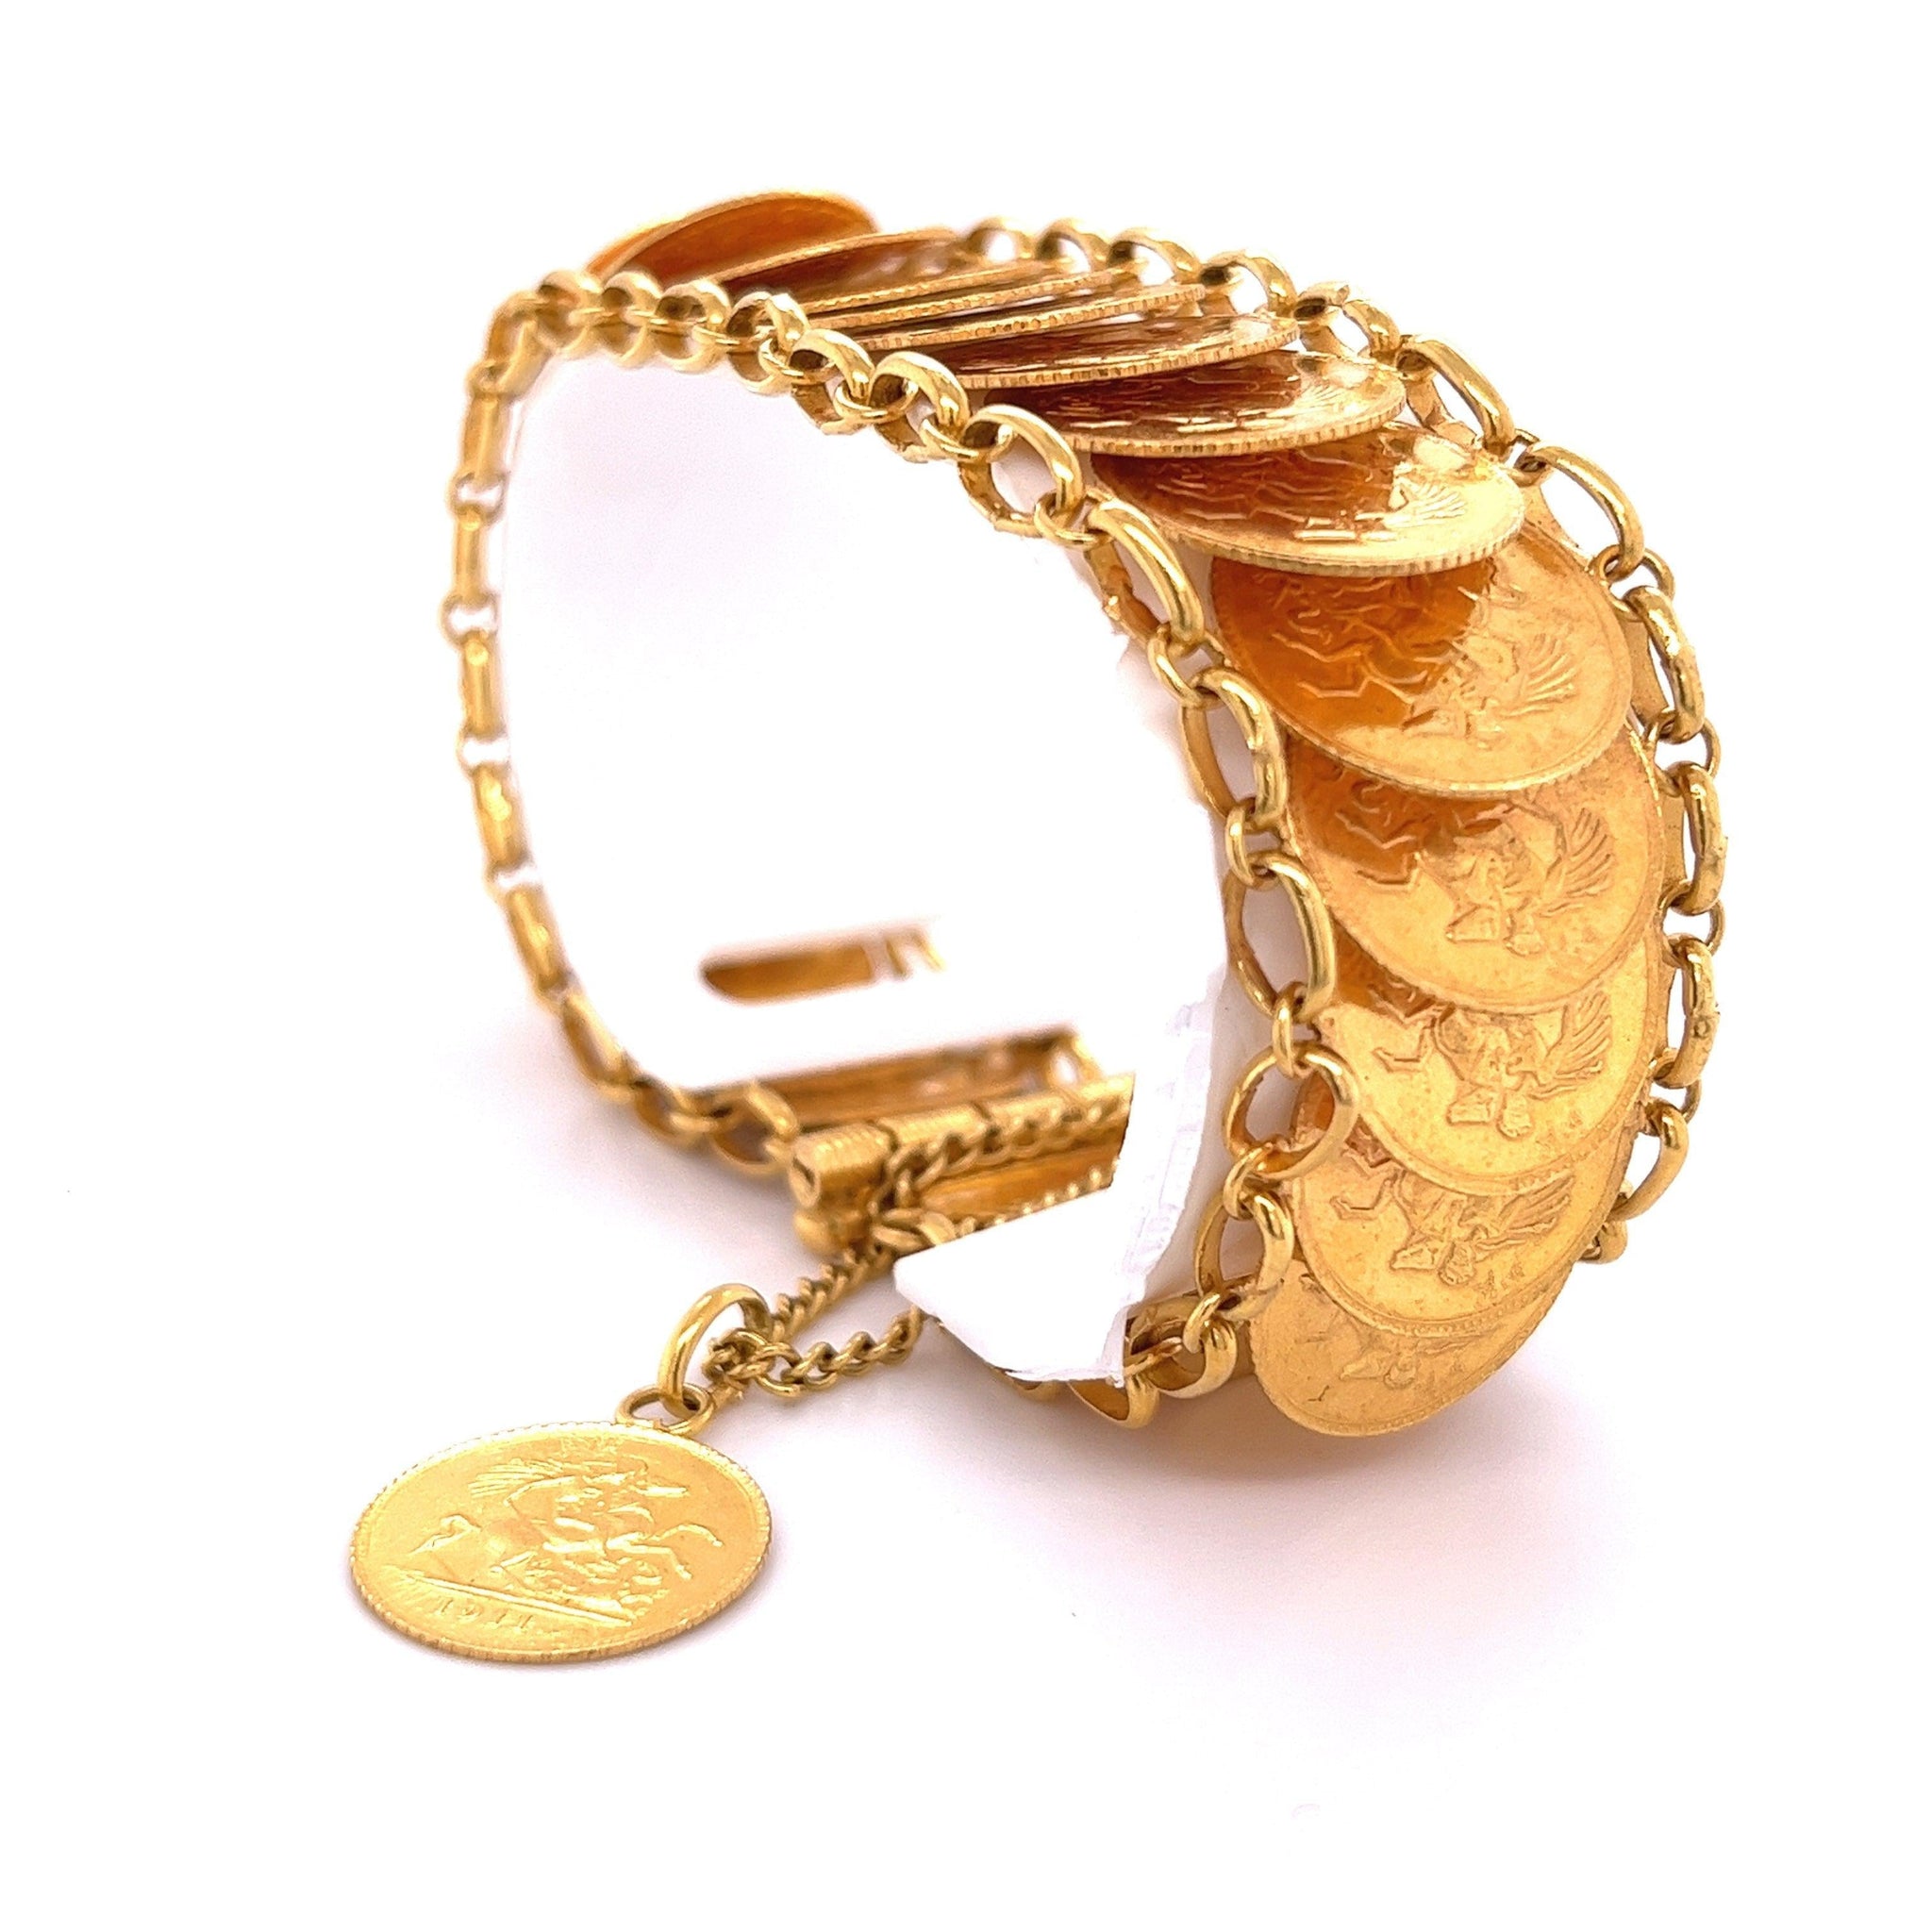 1911 King George V British Royal Mint Gold Coin Bracelet in 22k Gold | Replica-Bracelets-ASSAY